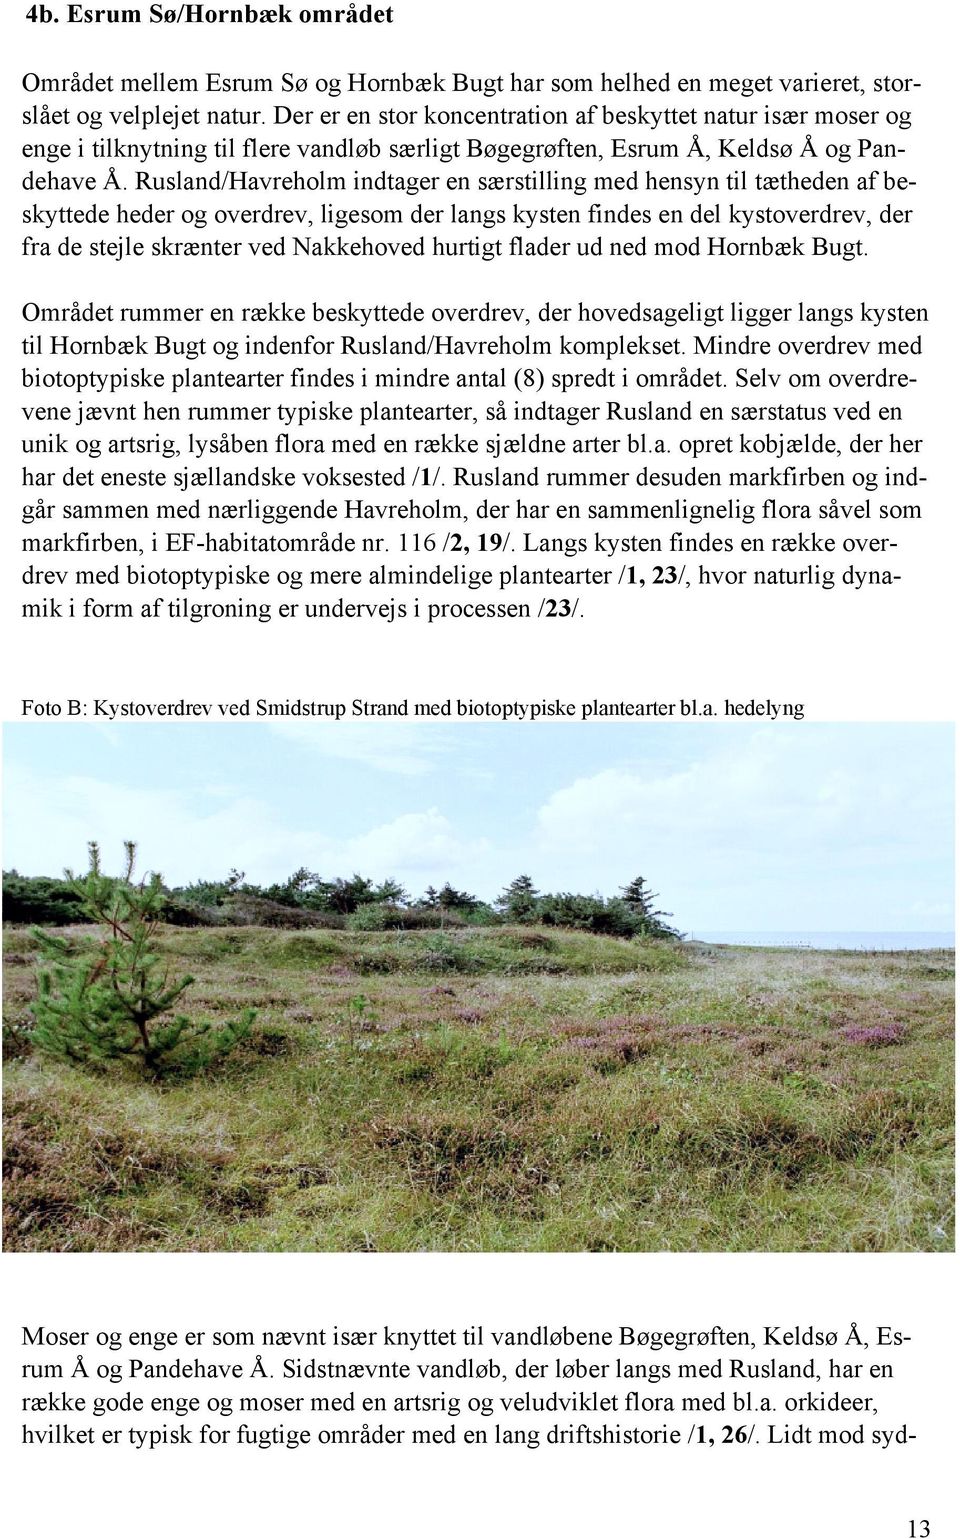 Rusland/Havreholm indtager en særstilling med hensyn til tætheden af beskyttede heder og overdrev, ligesom der langs kysten findes en del kystoverdrev, der fra de stejle skrænter ved Nakkehoved